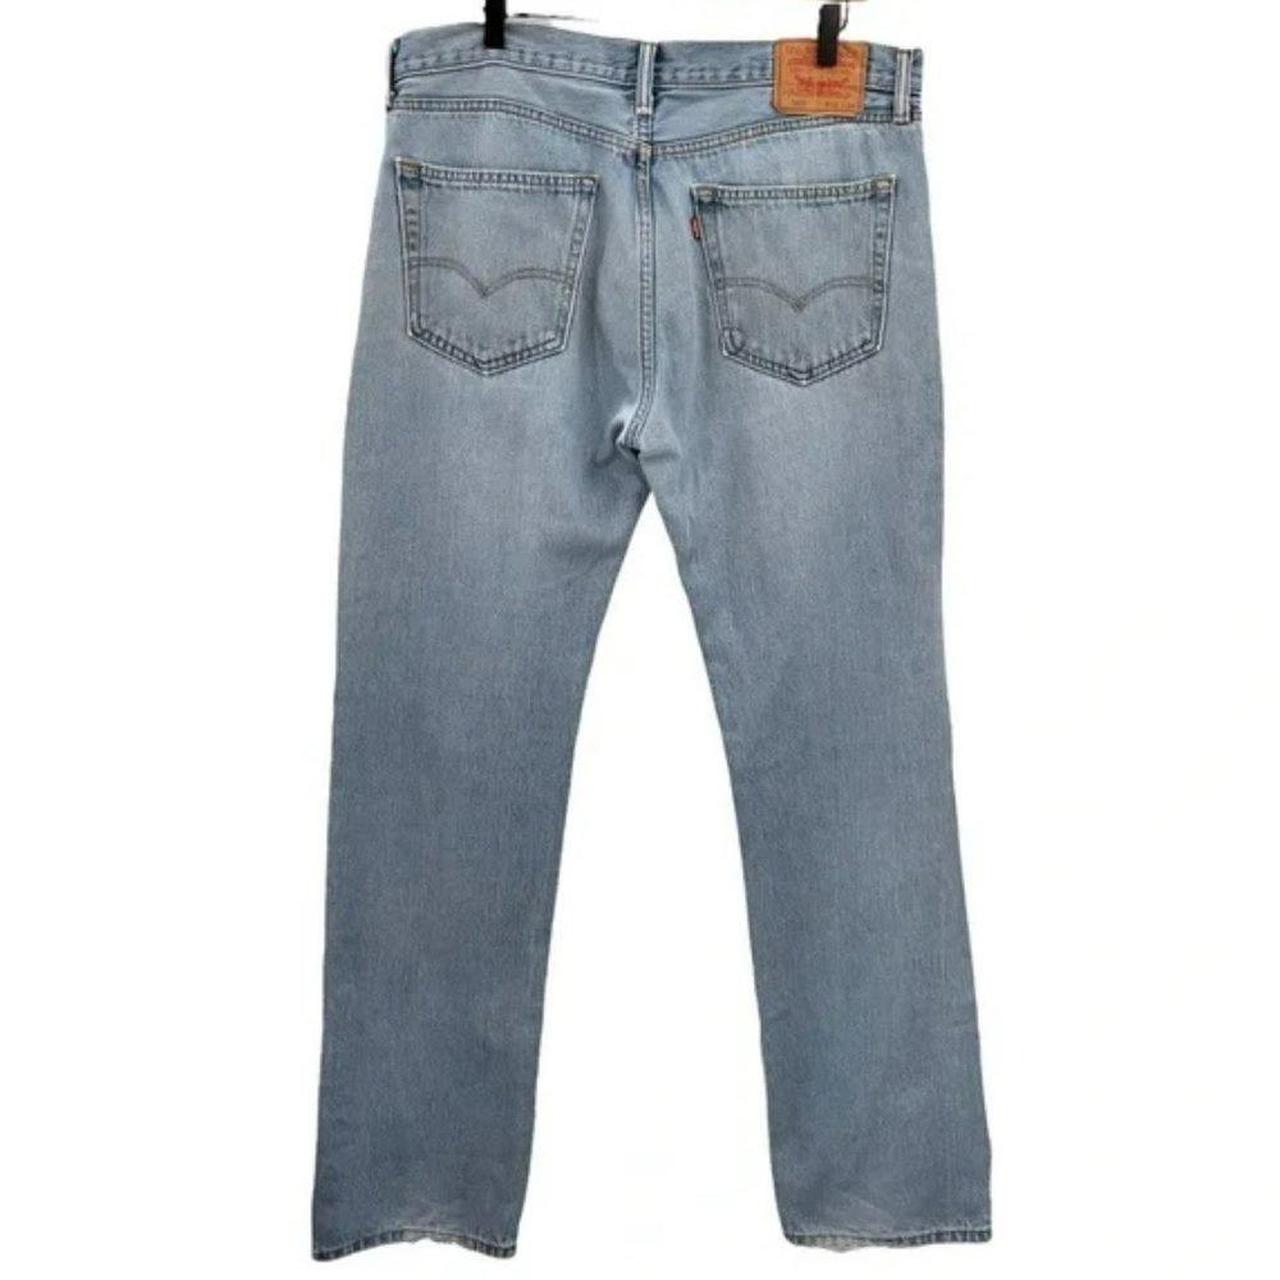 Levi’s 505 straight leg jeans a great broken-in... - Depop